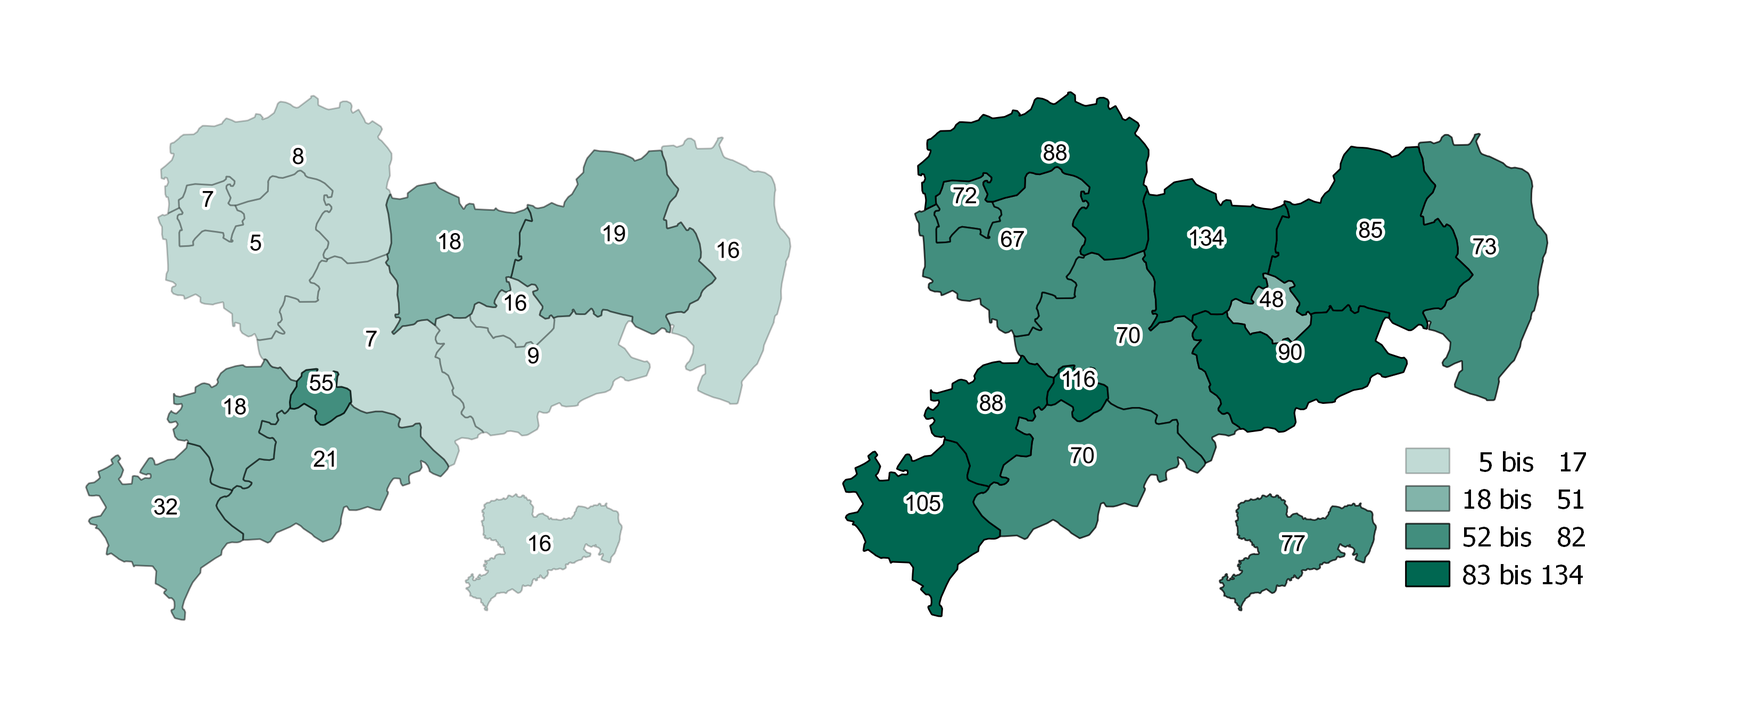 Von 2008 auf 2015 ist in Sachsen die Zahl der Zugänge mit der Hauptdiagnose Stimulanzien um 61 je 100.000 Einwohner angestiegen. In allen Landkreisen und Kreisfreien Städten erfolgte ein vergleichsweiser starker Anstieg der Zugänge. Am meisten Zugänge waren 2015 in Meißen mit 134 Fällen zu verzeichnen. Hier erfolgte auch der höchste Anstieg seit 2008 um 116 Fälle.